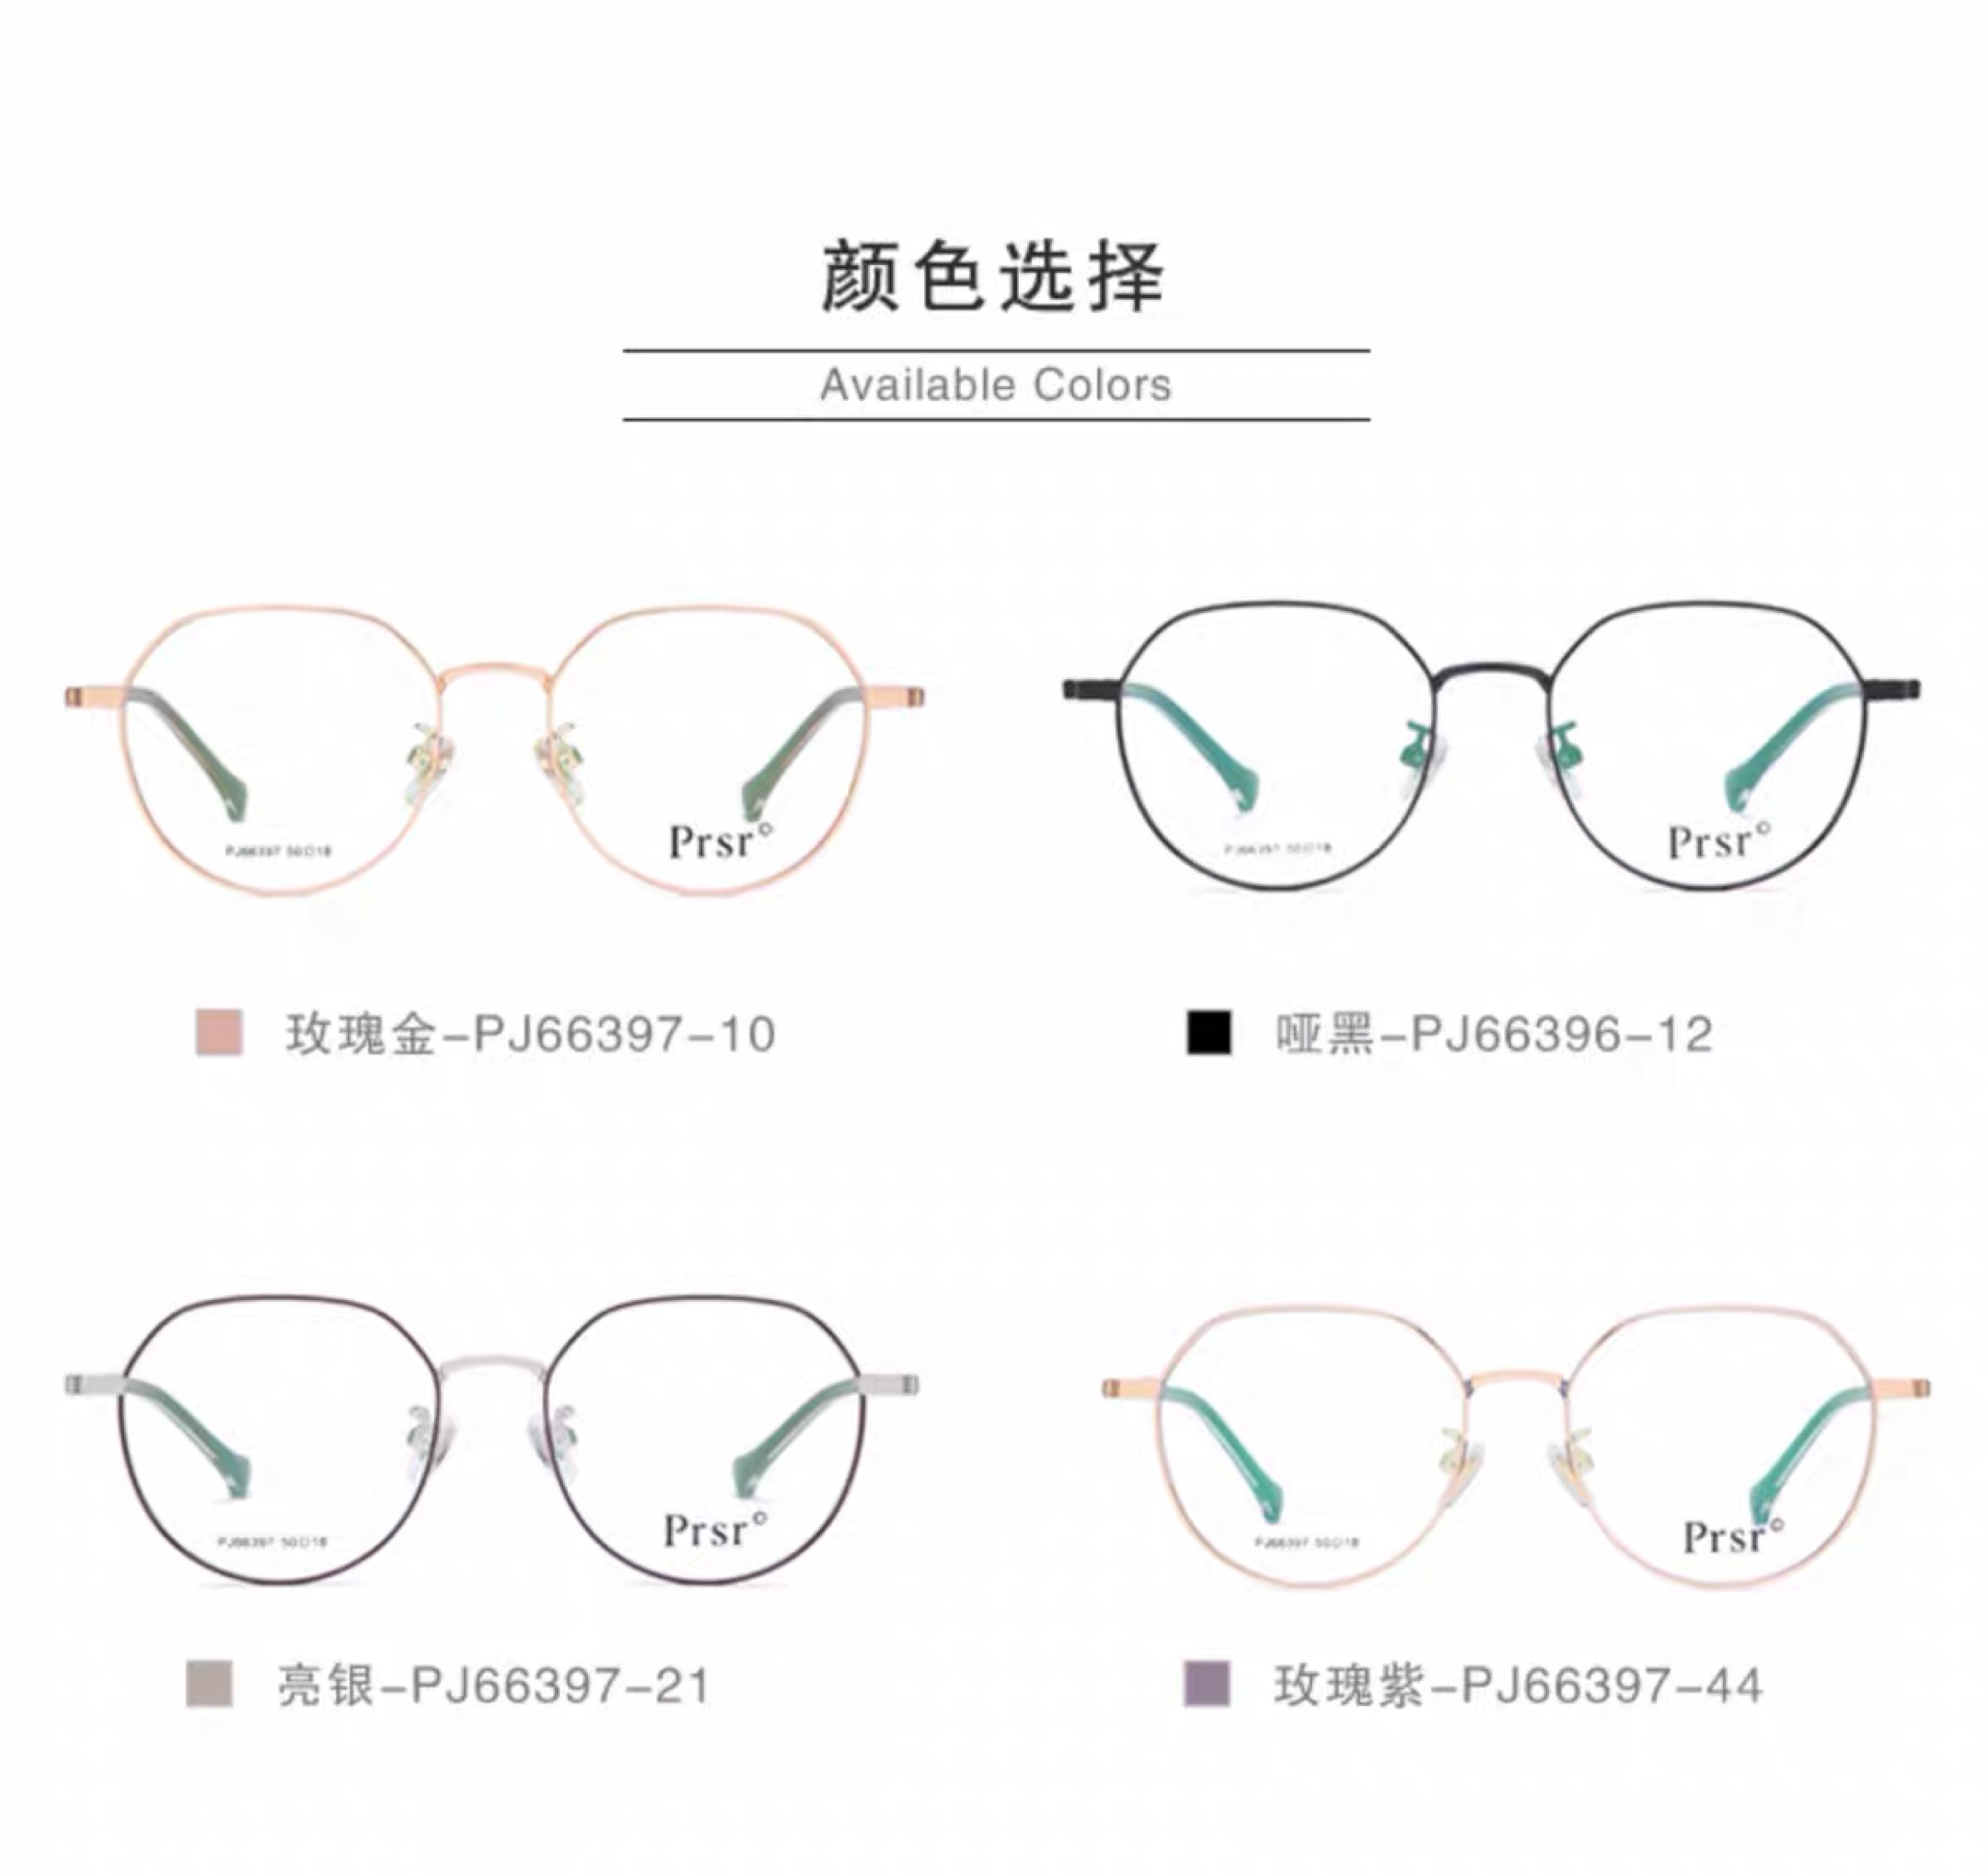 帕莎psr正品新款眼镜架防蓝光近视镜架男款金属时尚方框PJ66397详情图2